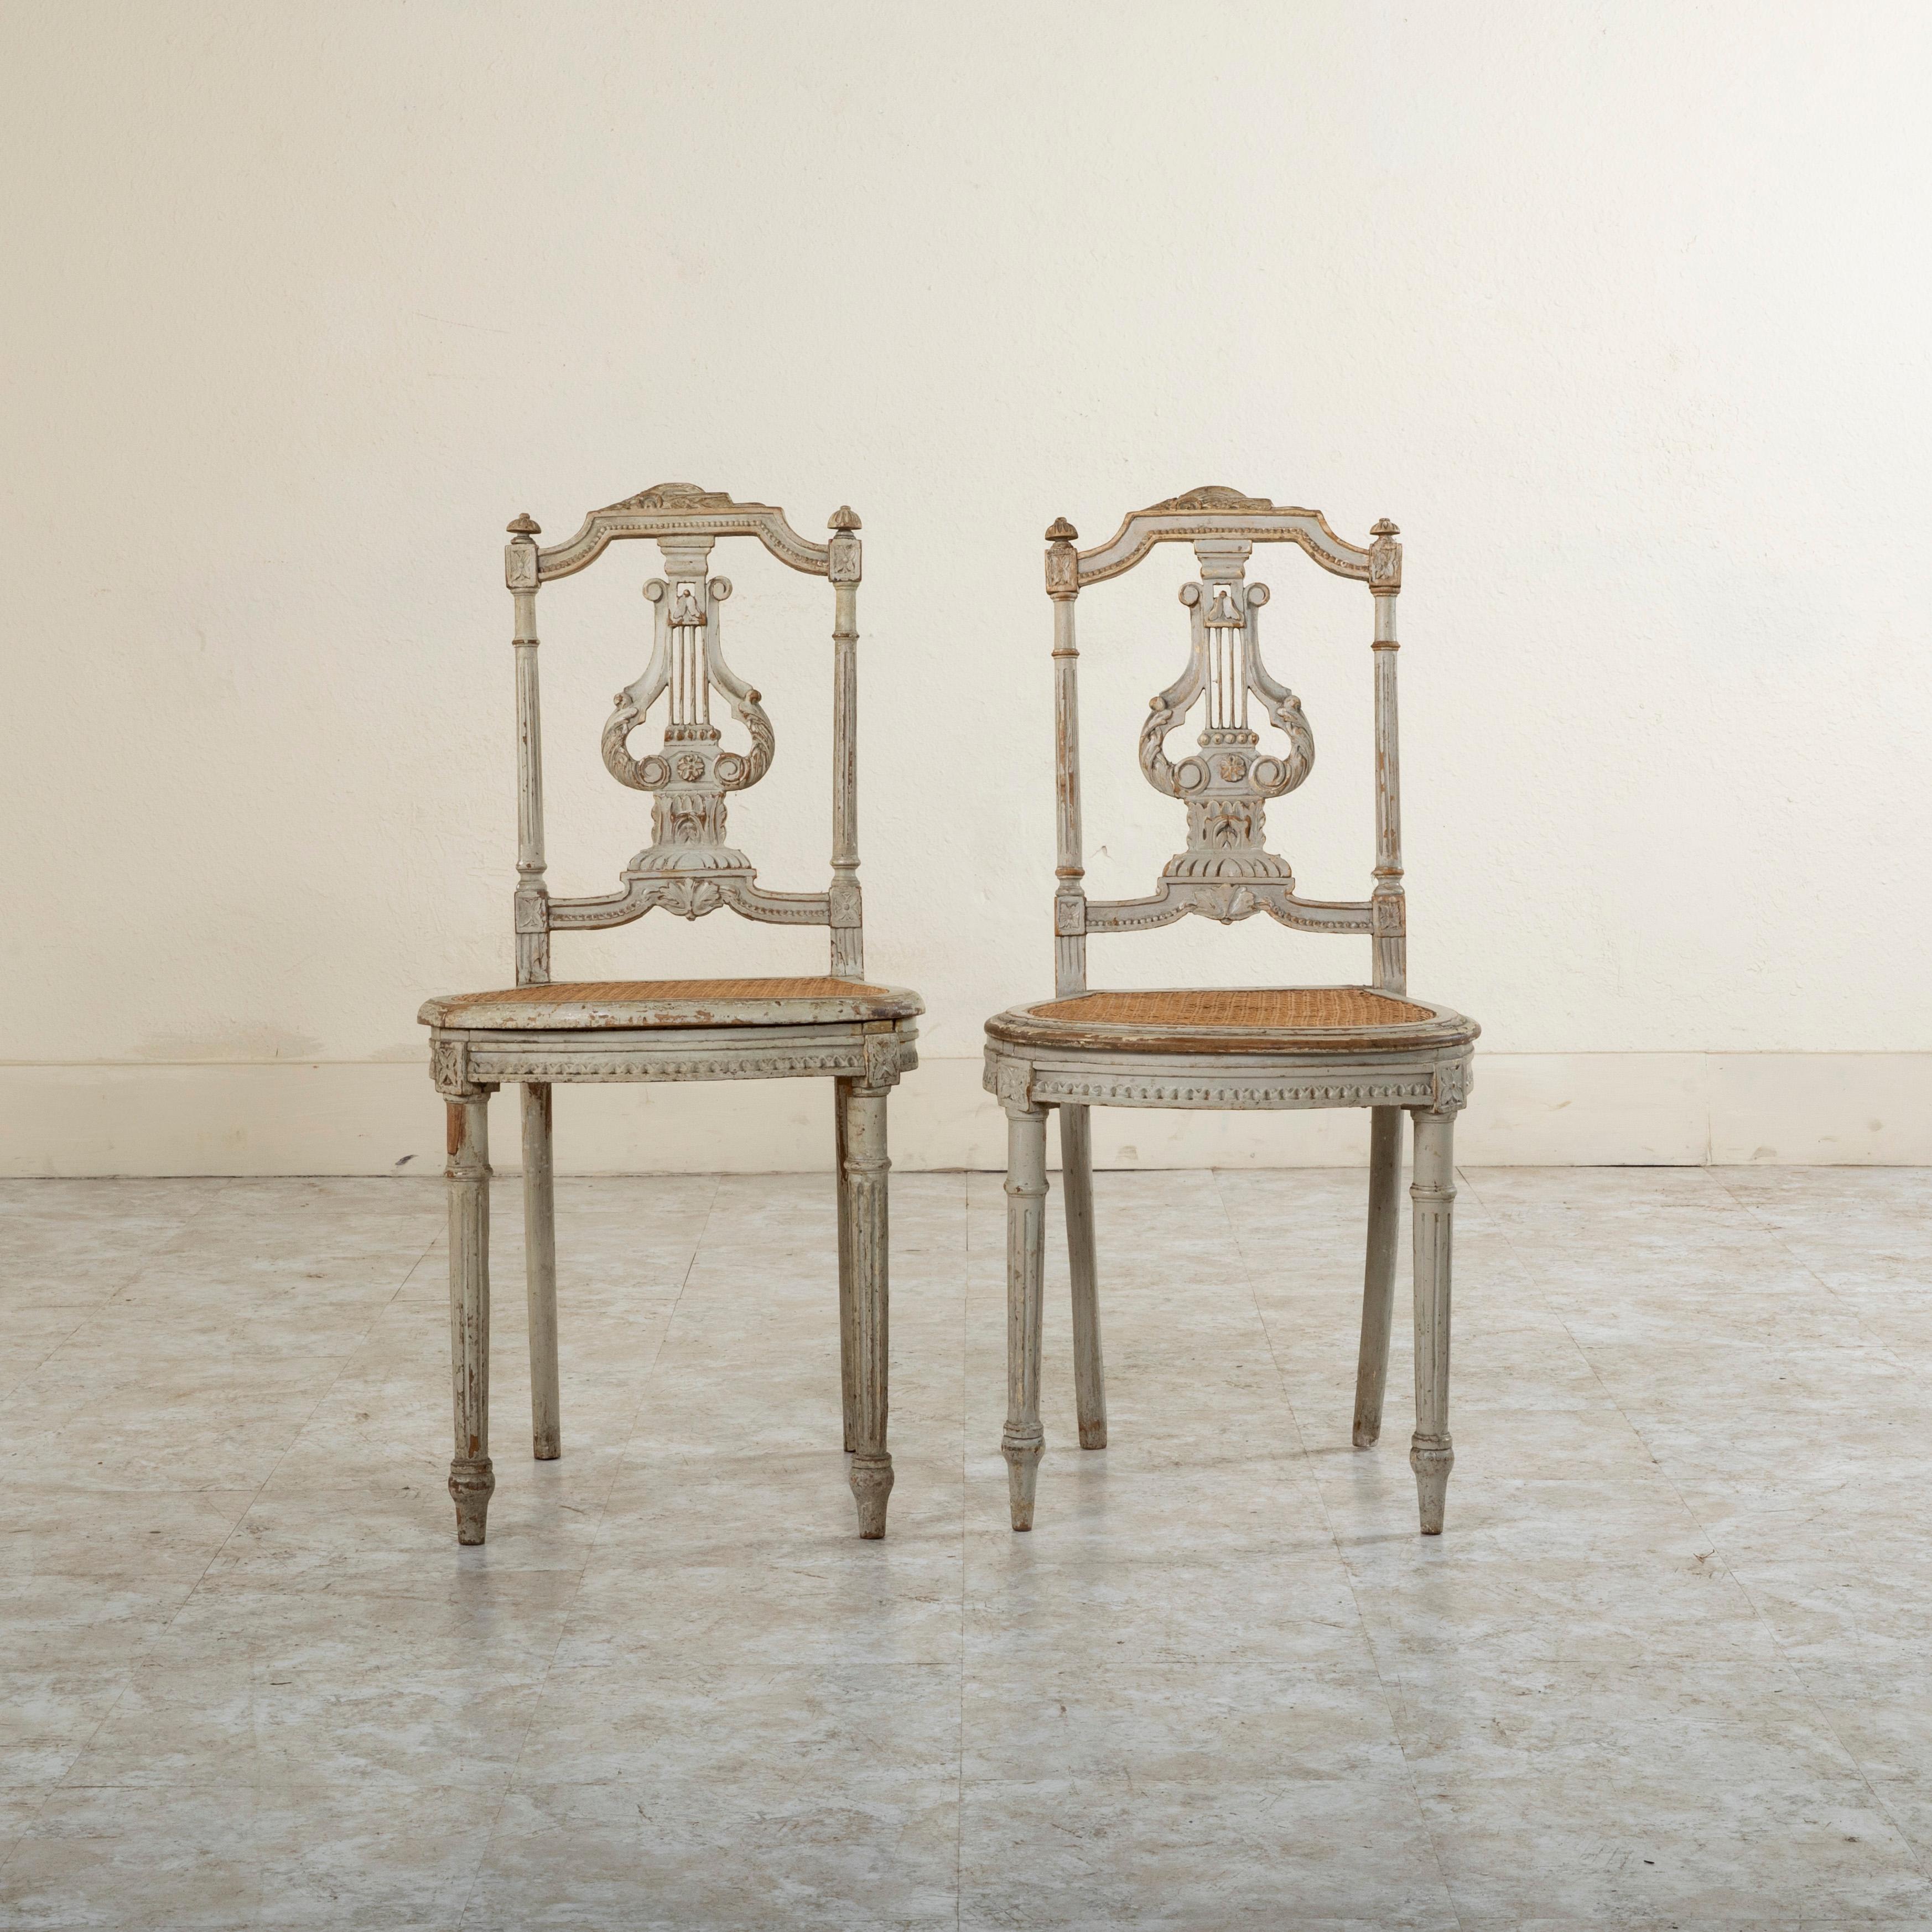 Cette paire de chaises d'opéra françaises de style Louis XVI du milieu du XIXe siècle présente des rosettes sculptées à la main au niveau des joints de matrice et une lyre centrale avec des feuilles en volutes dans le dossier de l'assise.... Le